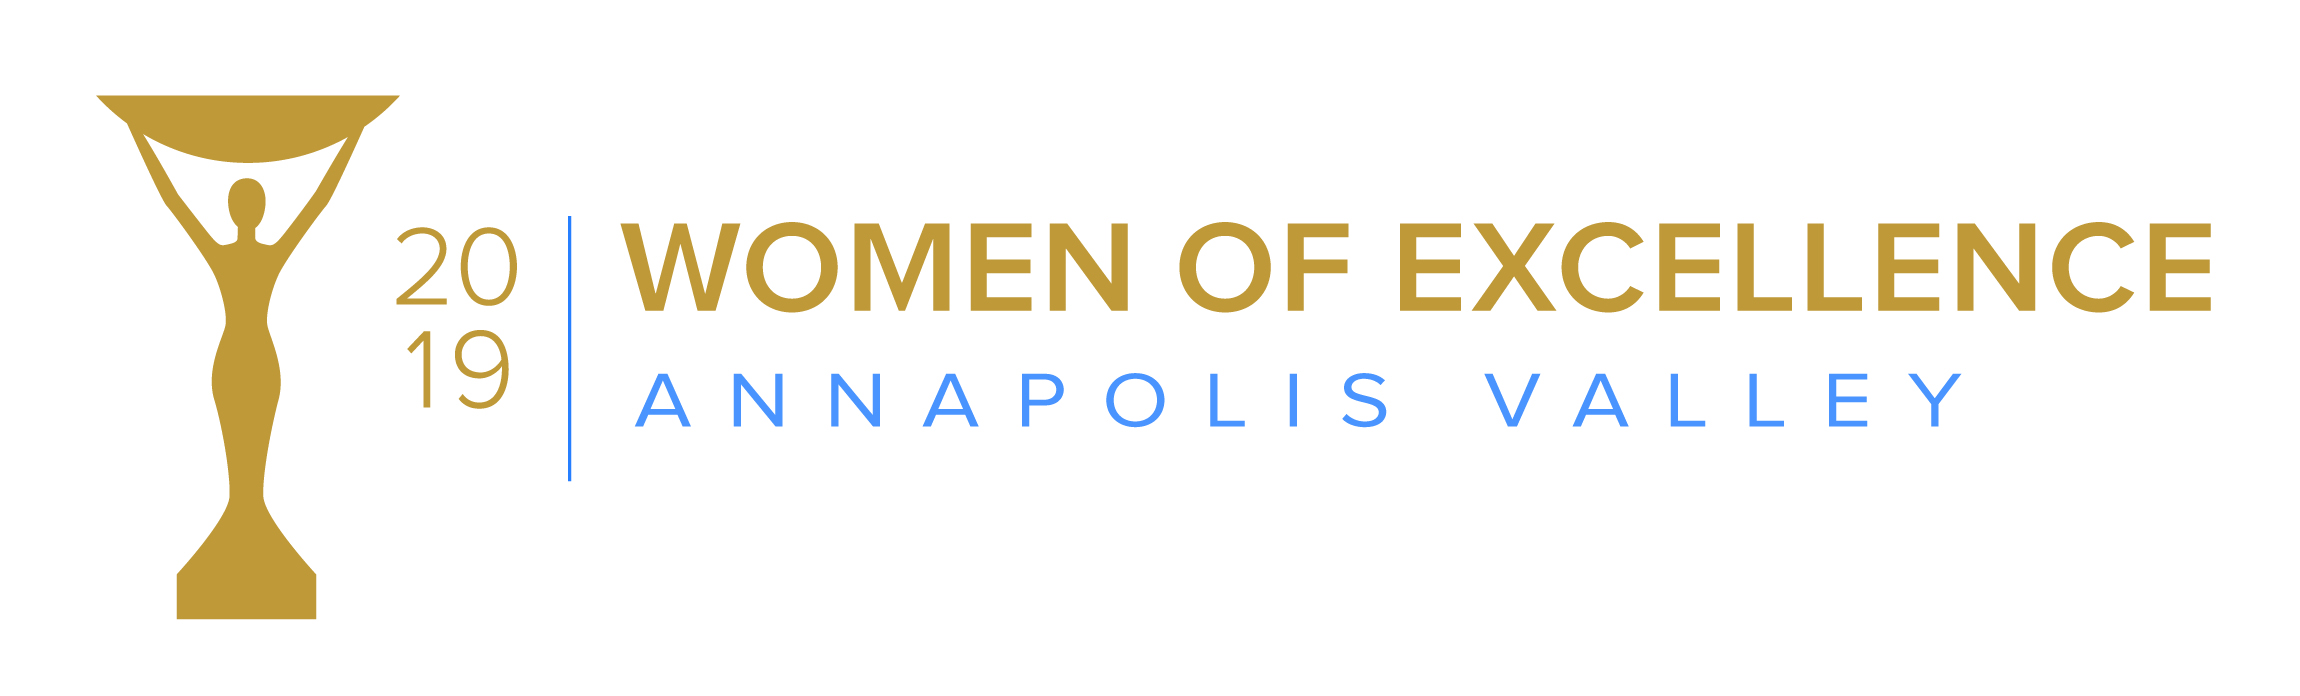 Women of Excellence 2019 logo.jpg